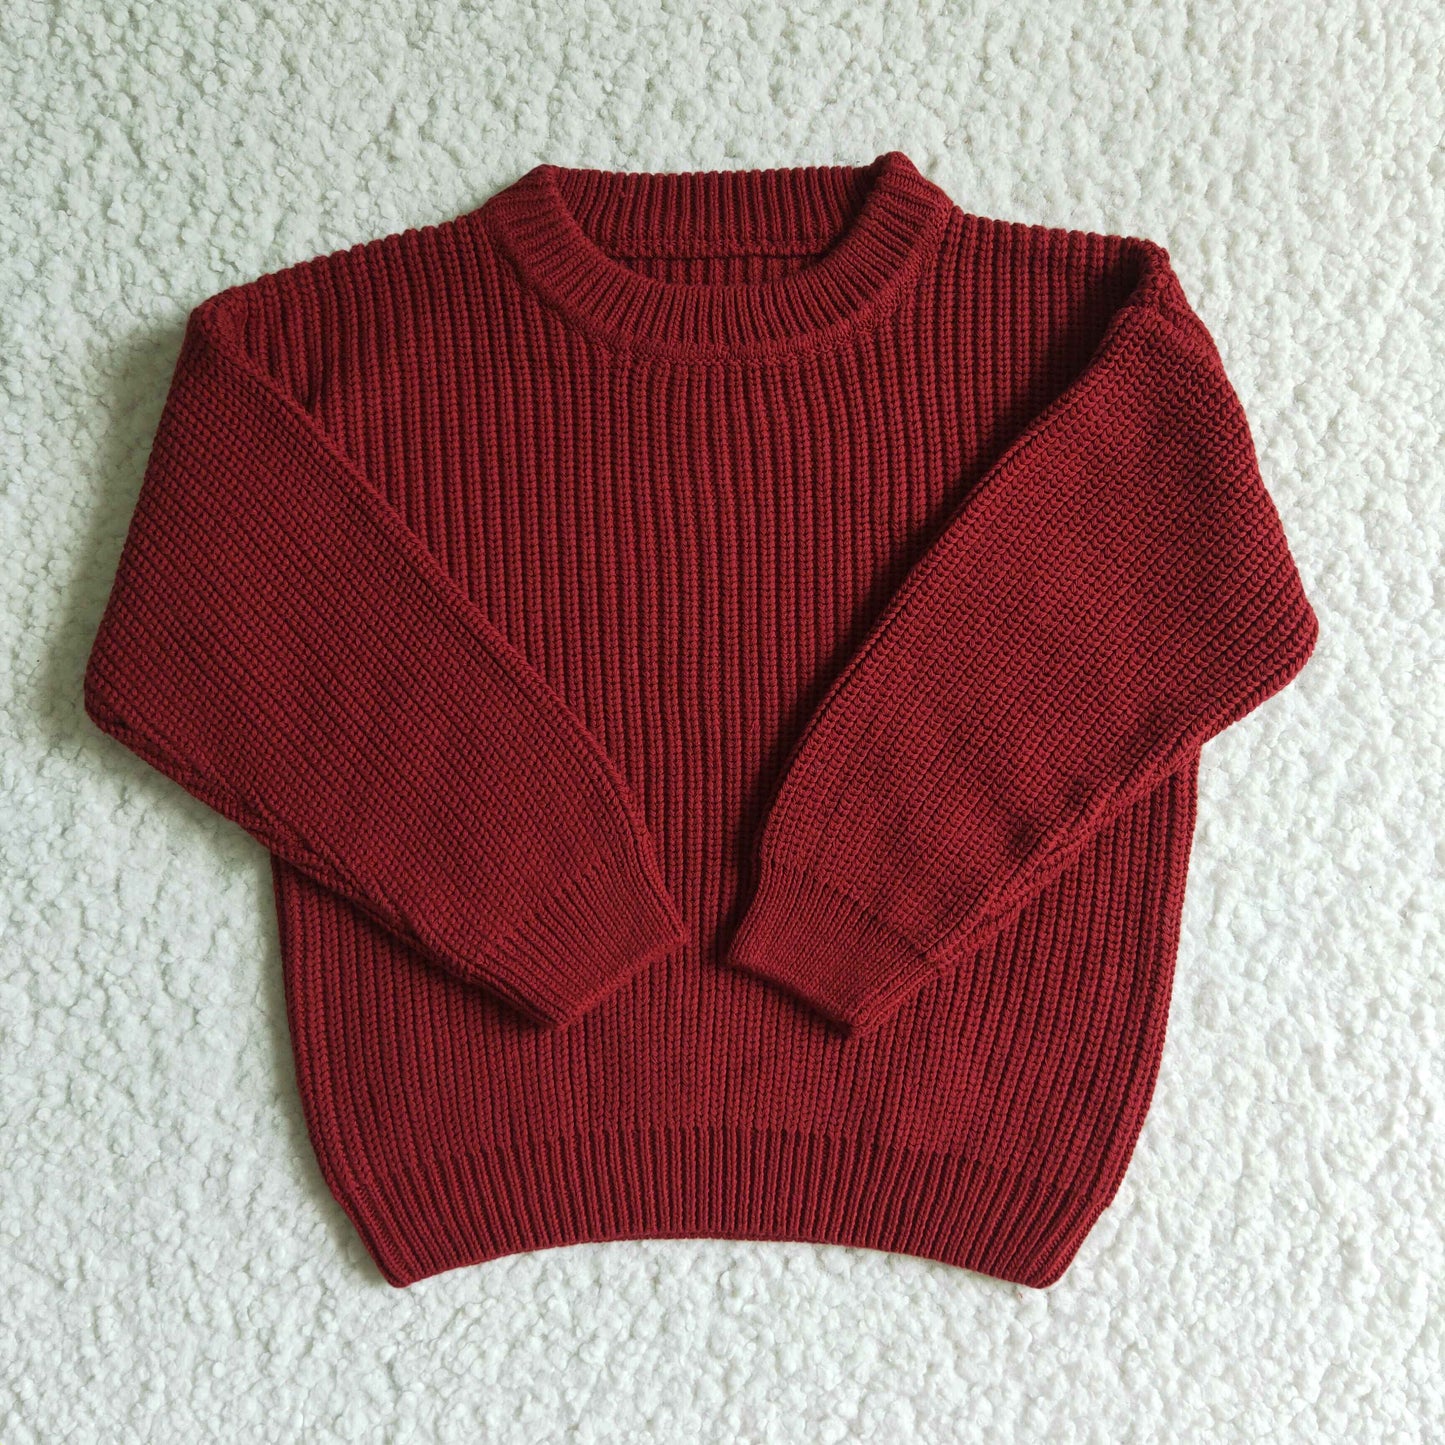 Maroon cotton winter sweater